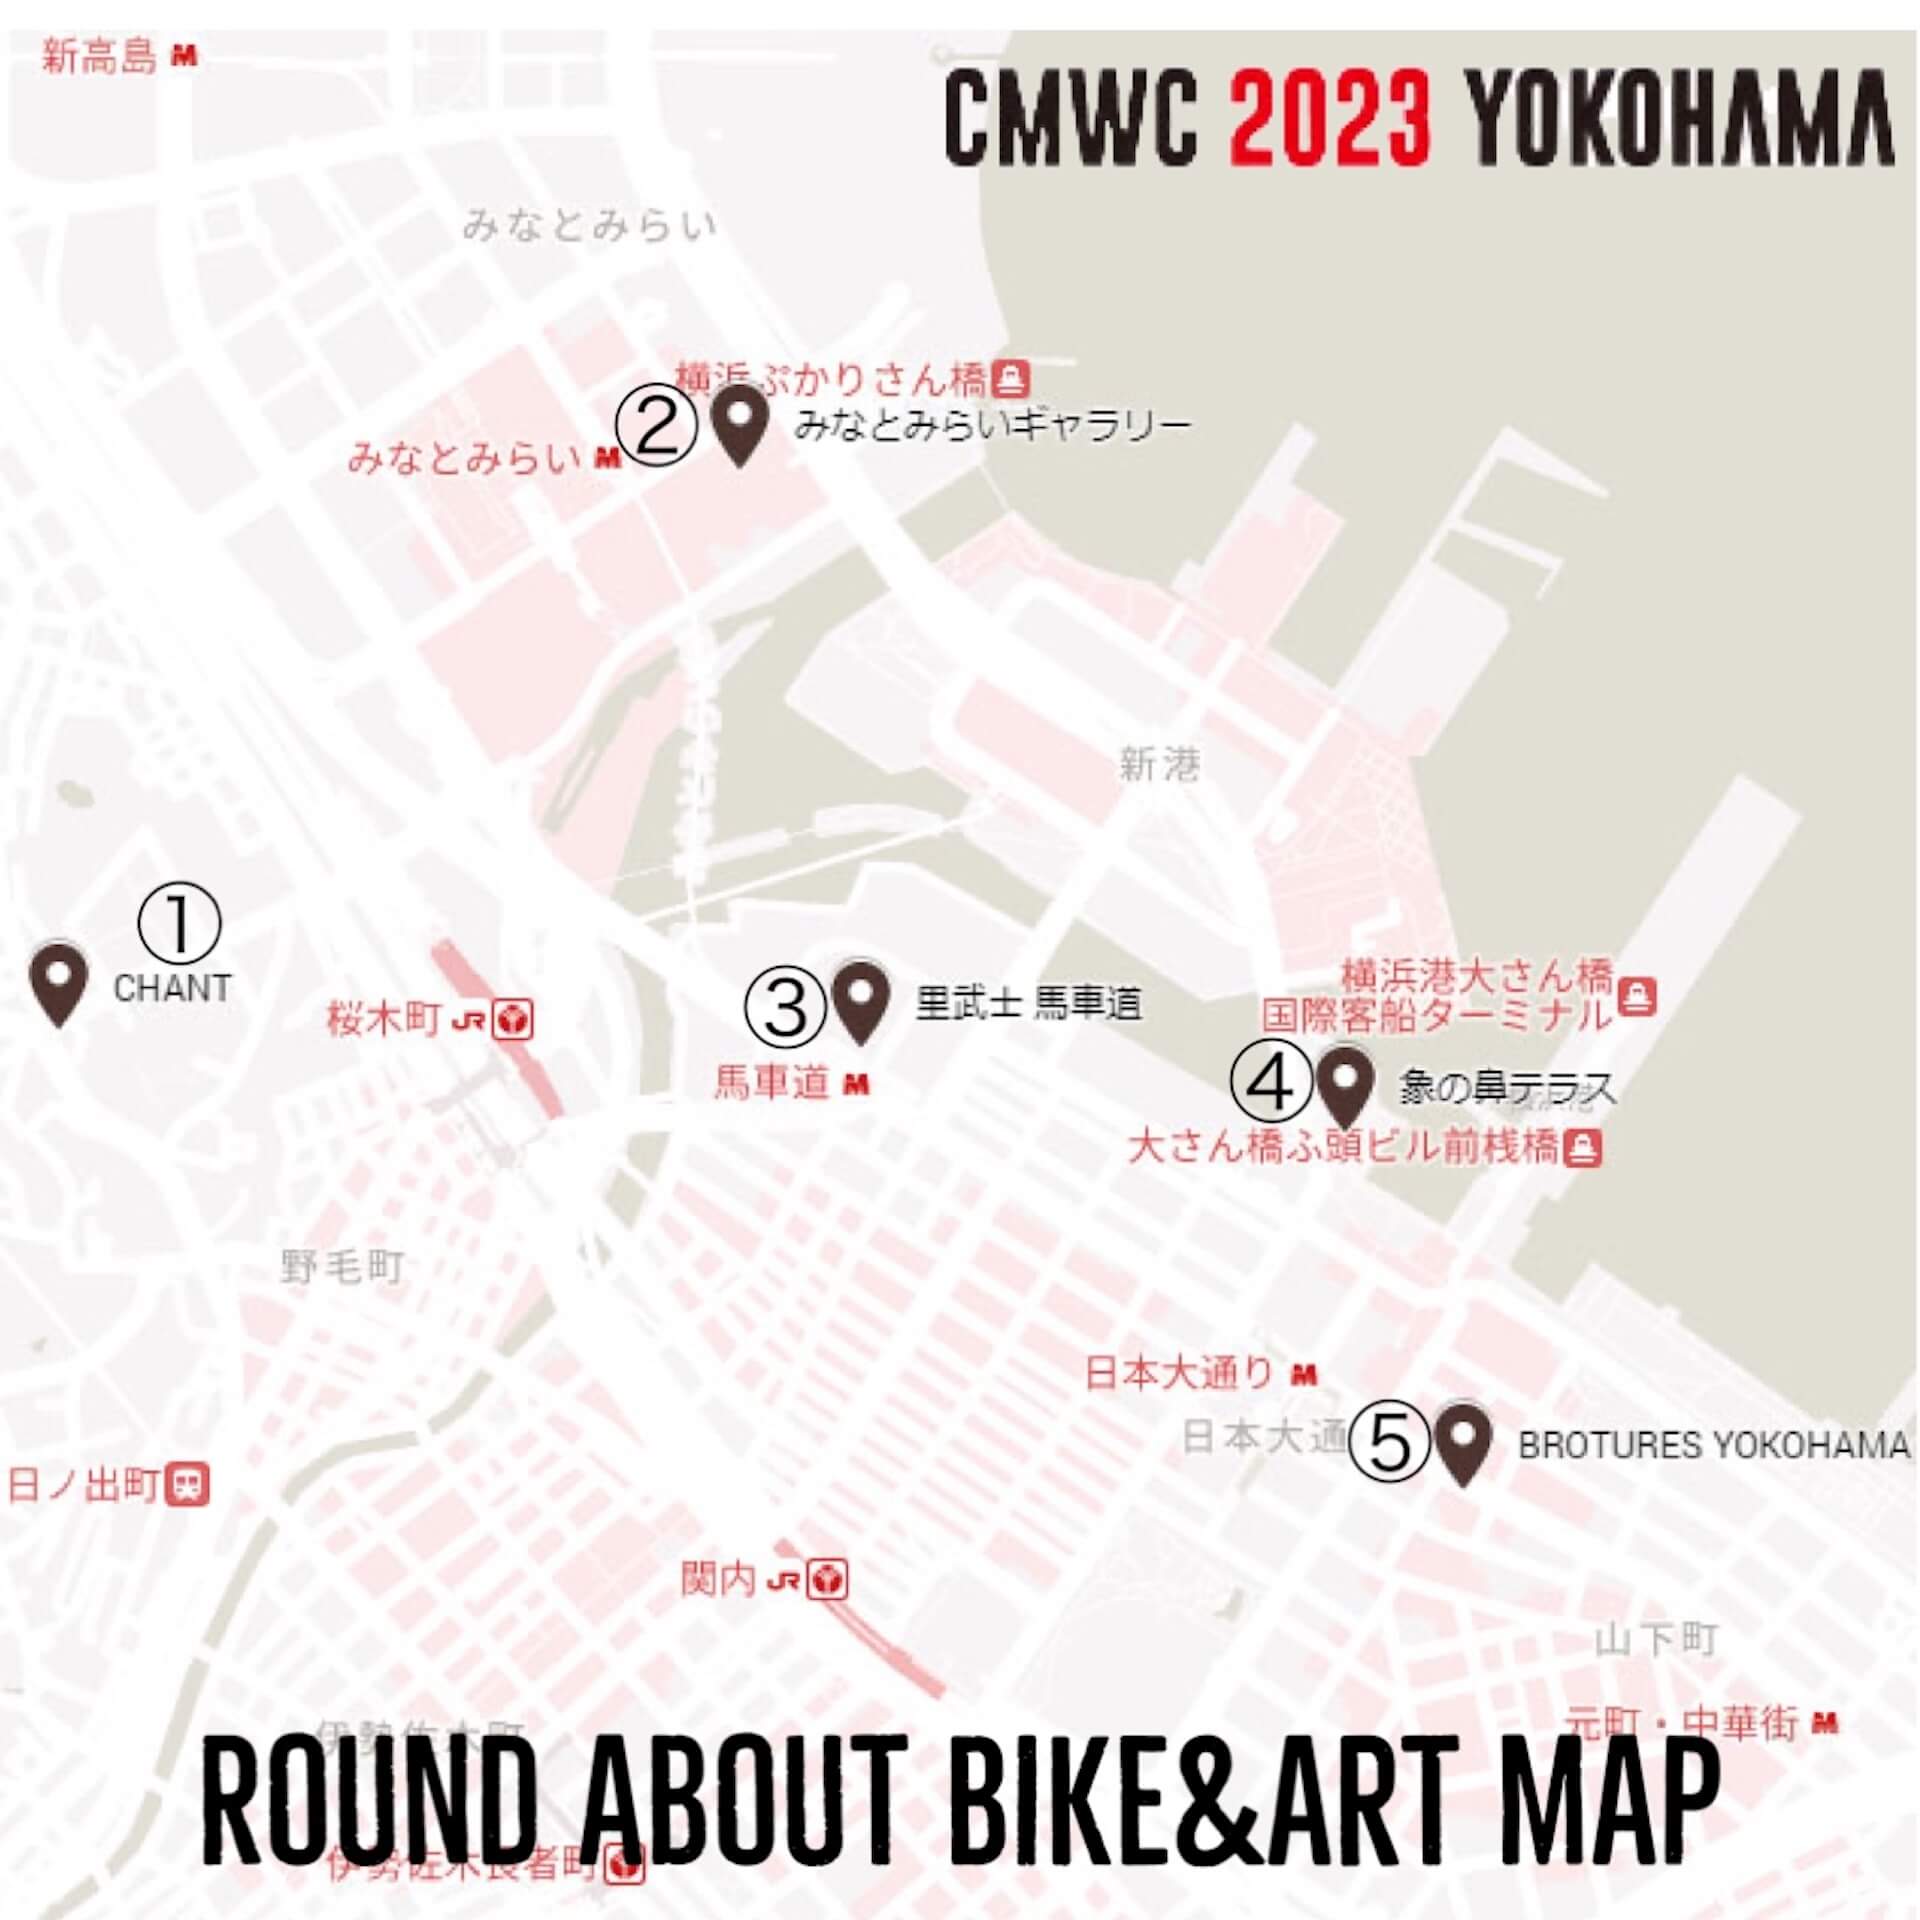 横浜の街に自転車があふれる6日間──メッセンジャー発の都市型バイシクルフェスティバル『CMWC 2023 Yokohama』が9/20-25に開催！ art-culture230915-cmwc2023-2